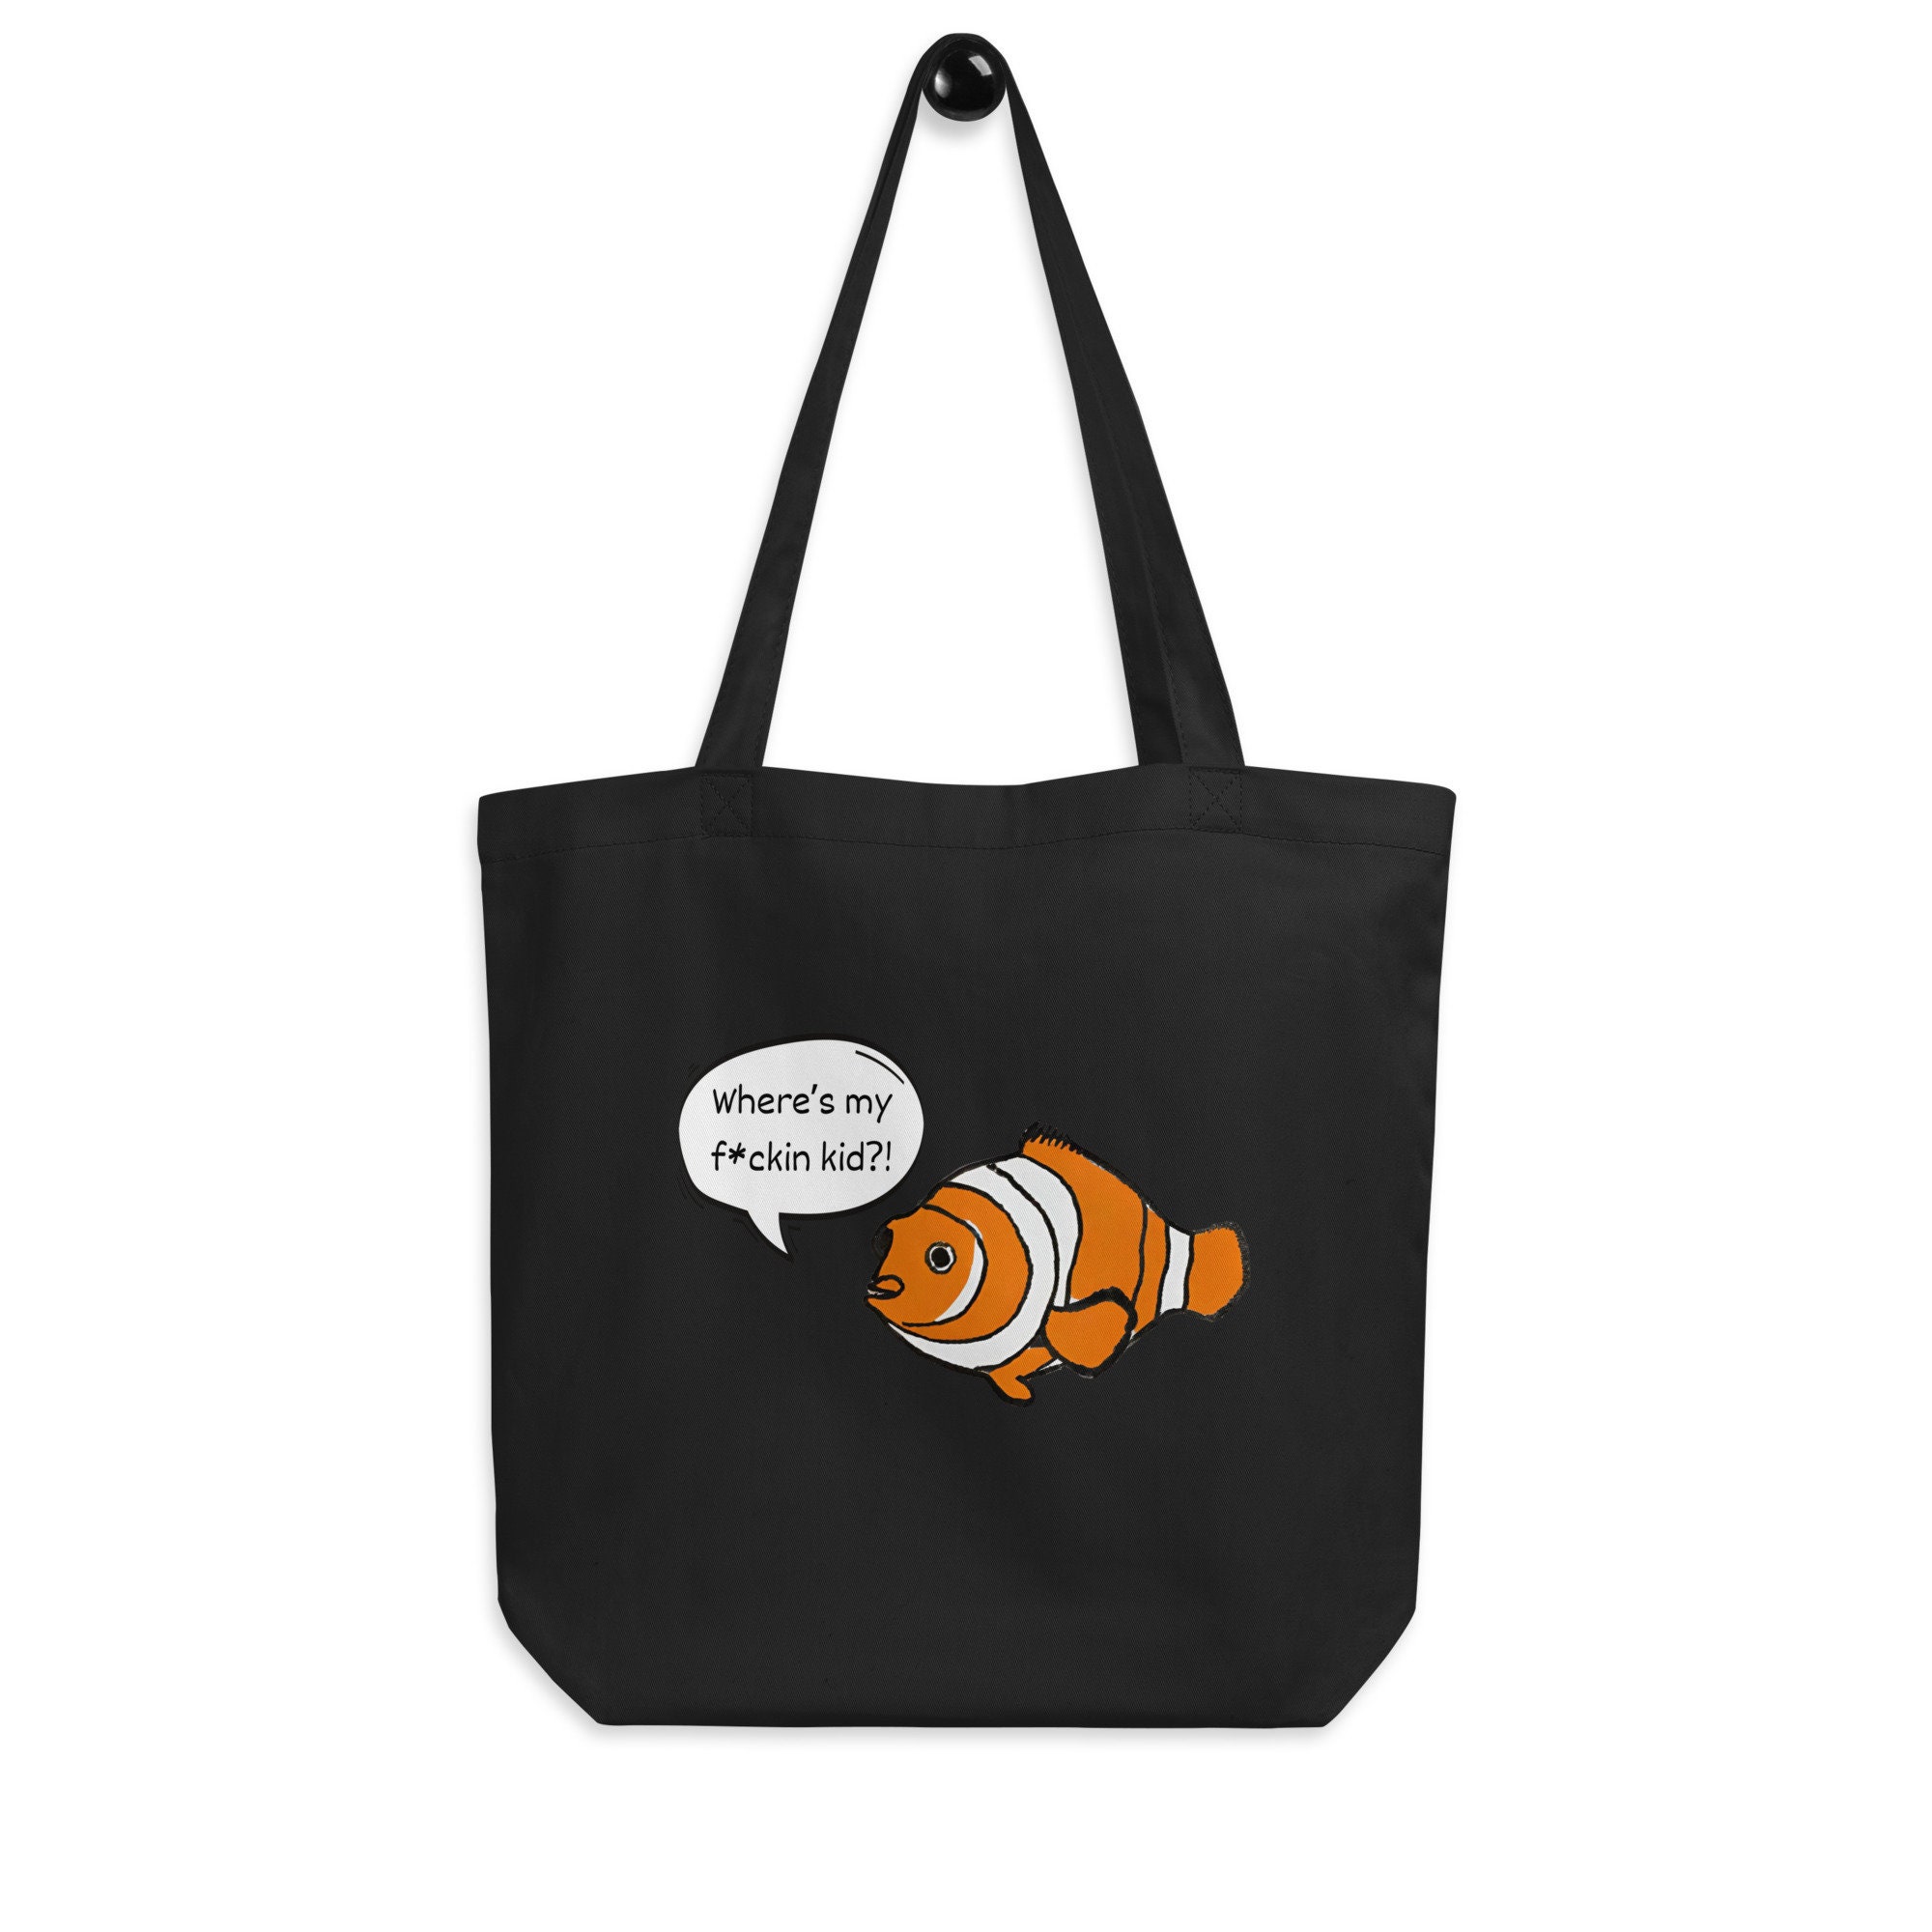 Buy Finding Nemo Bag Online In India -  India